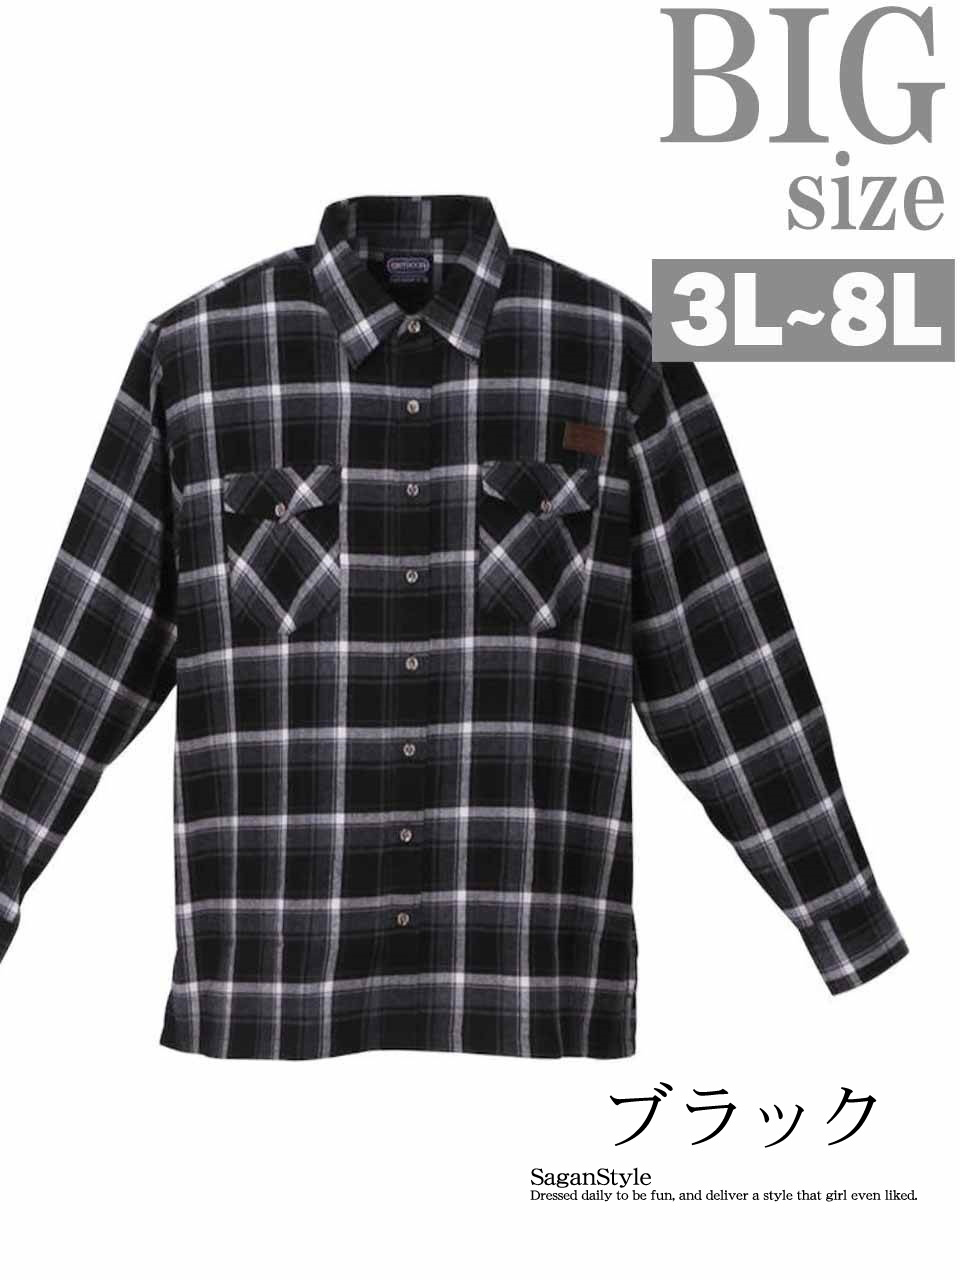 【大きいサイズ 3L〜8L メンズ】暖か起毛チェック柄ネルシャツ タータンチェック キングサイズ オ...